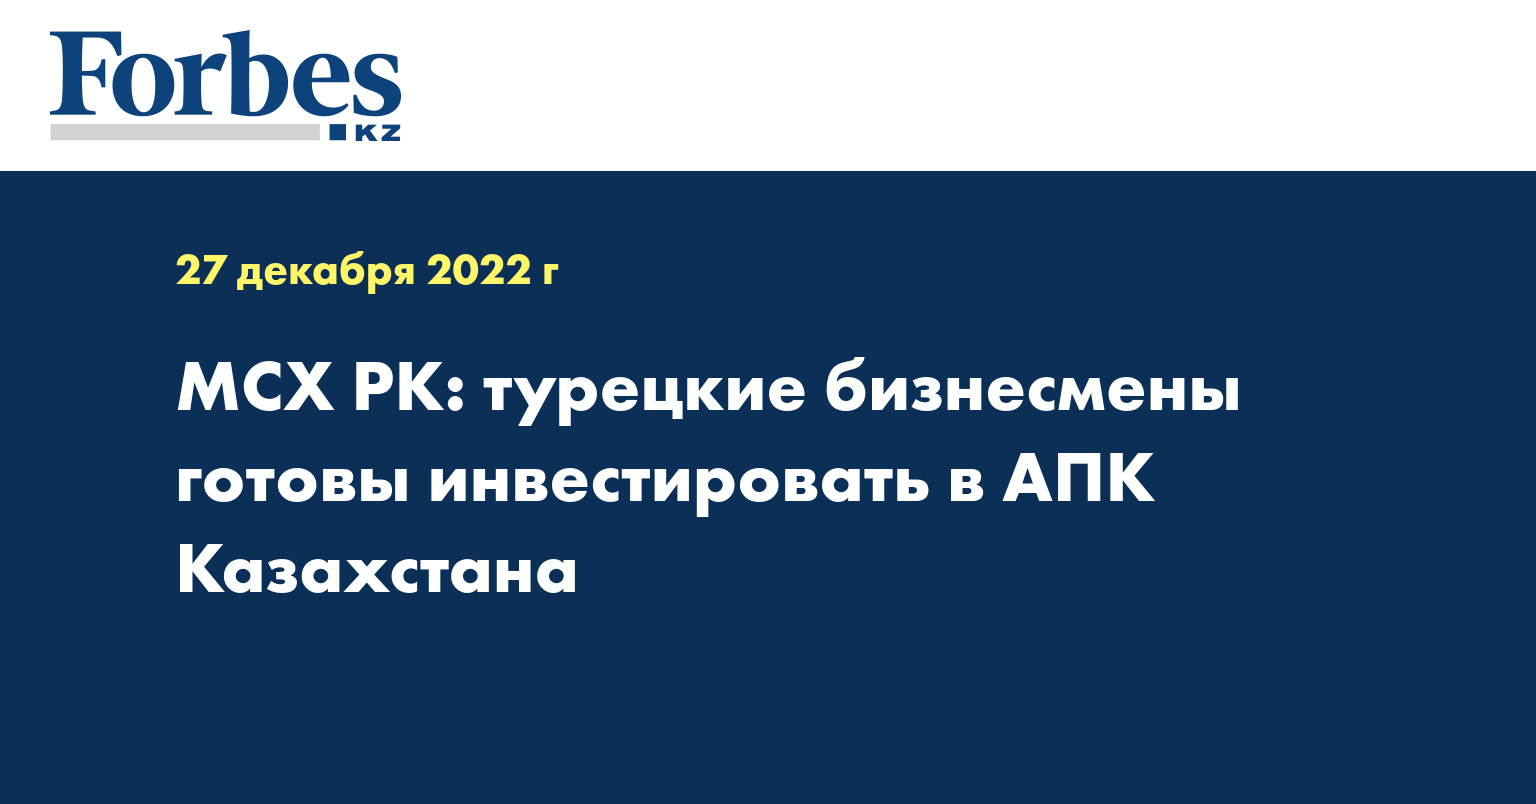 МСХ РК: турецкие бизнесмены готовы инвестировать в АПК Казахстана